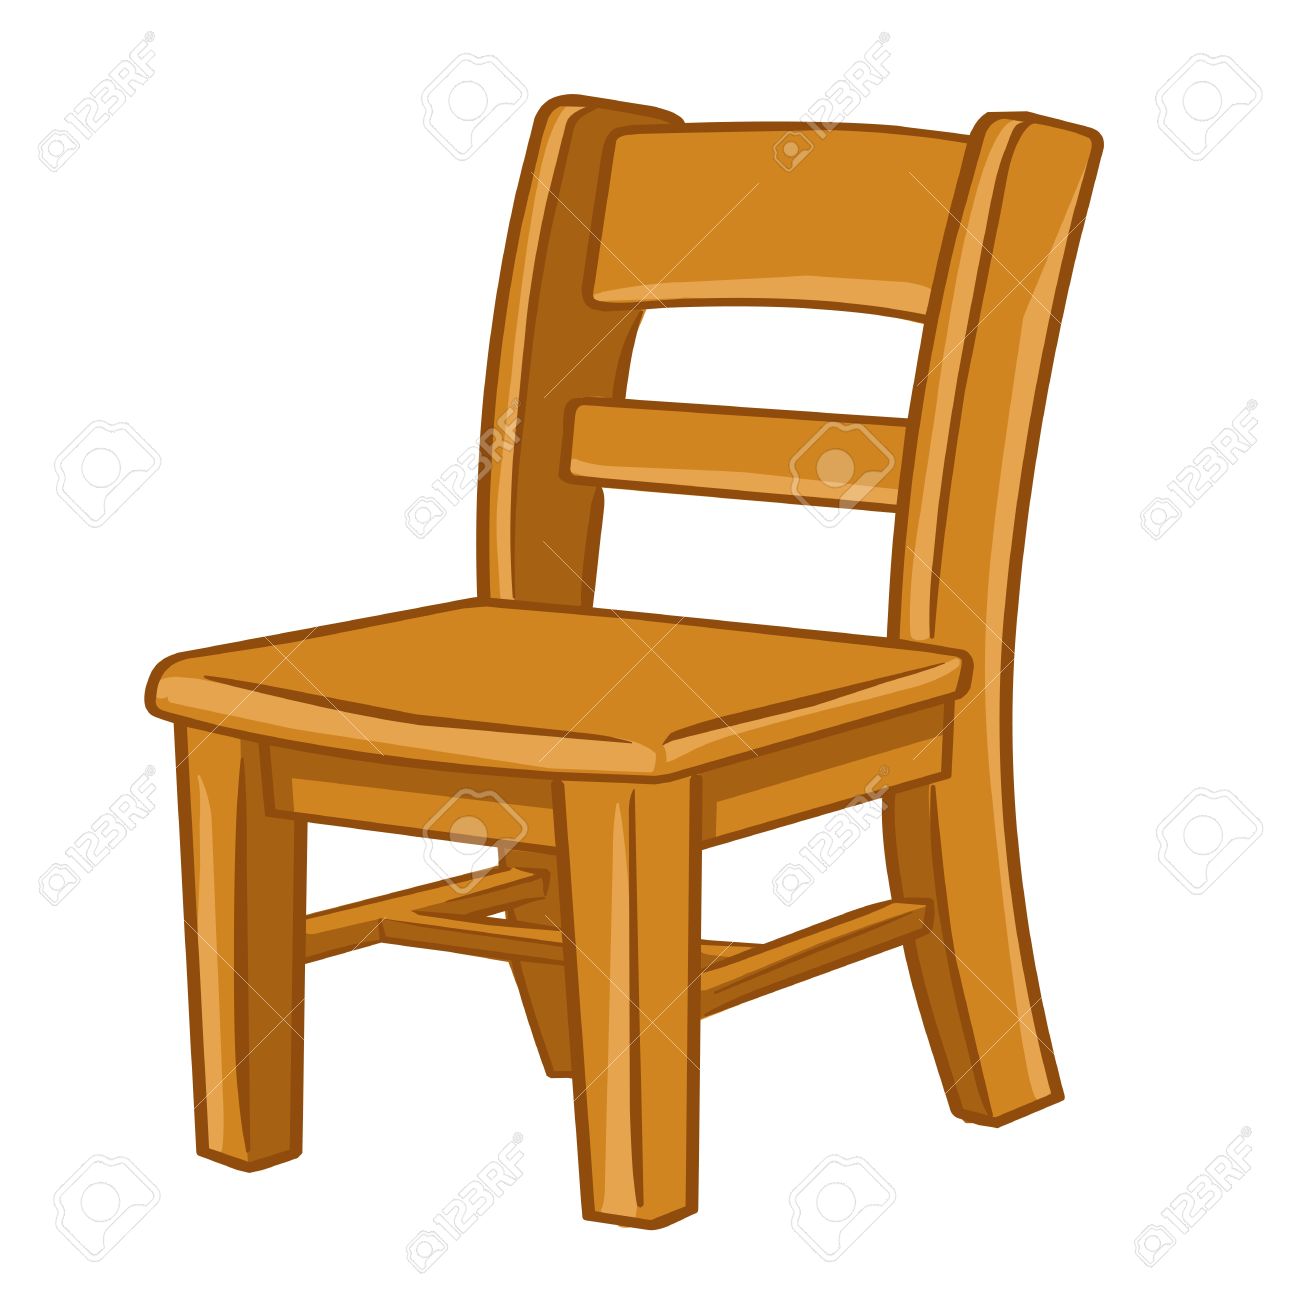 chair clipart wood chair